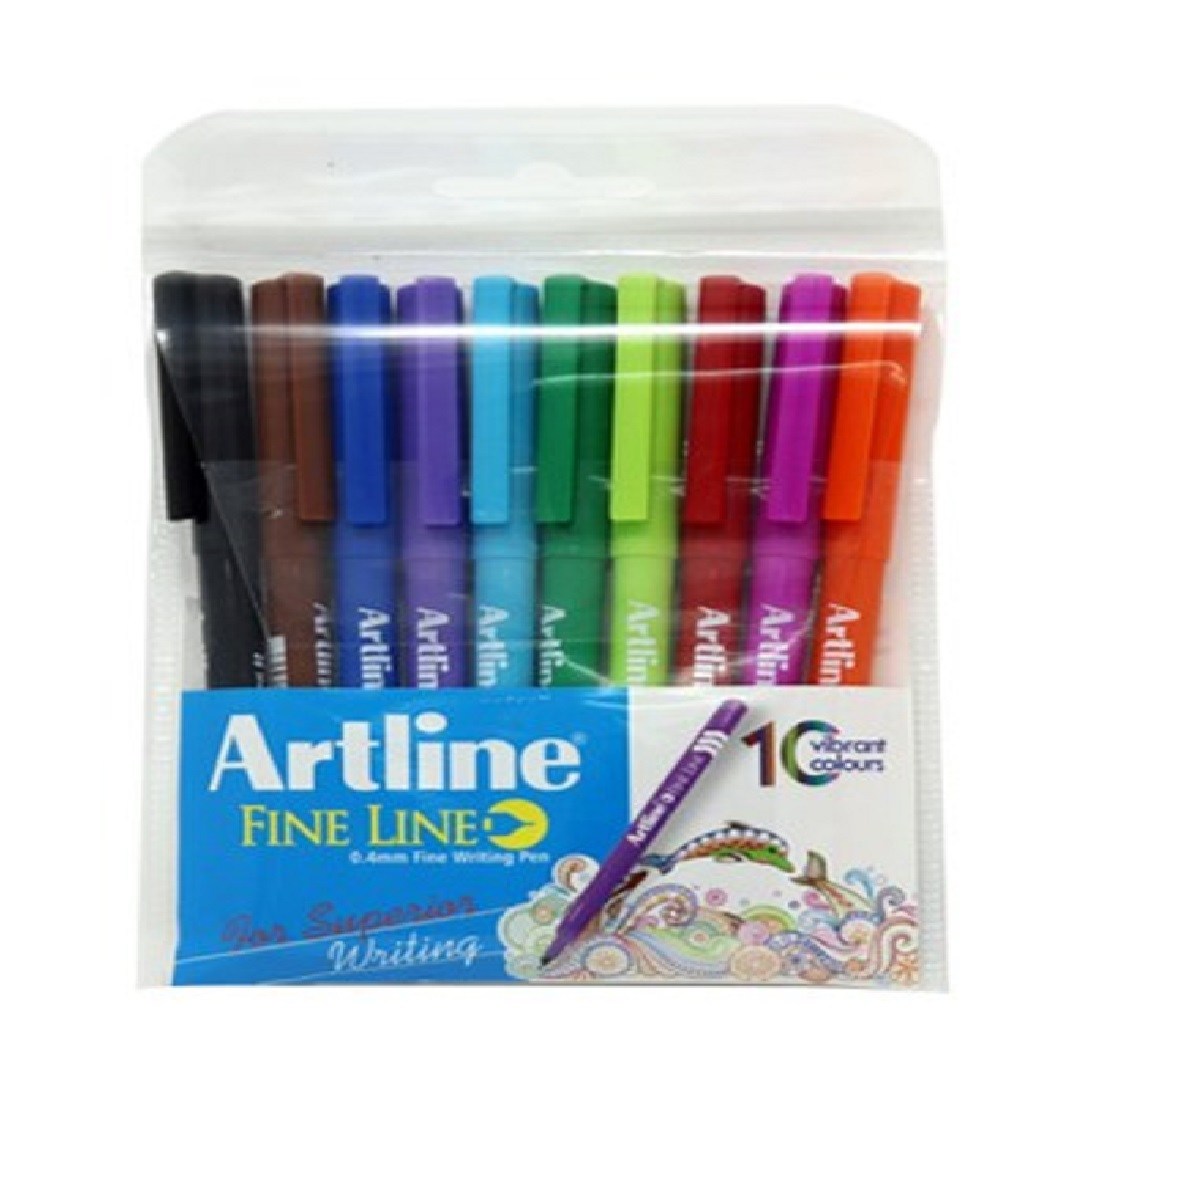 Artline Fine Line 0.4mm Fine Writing Pen (10 vibrant colors)